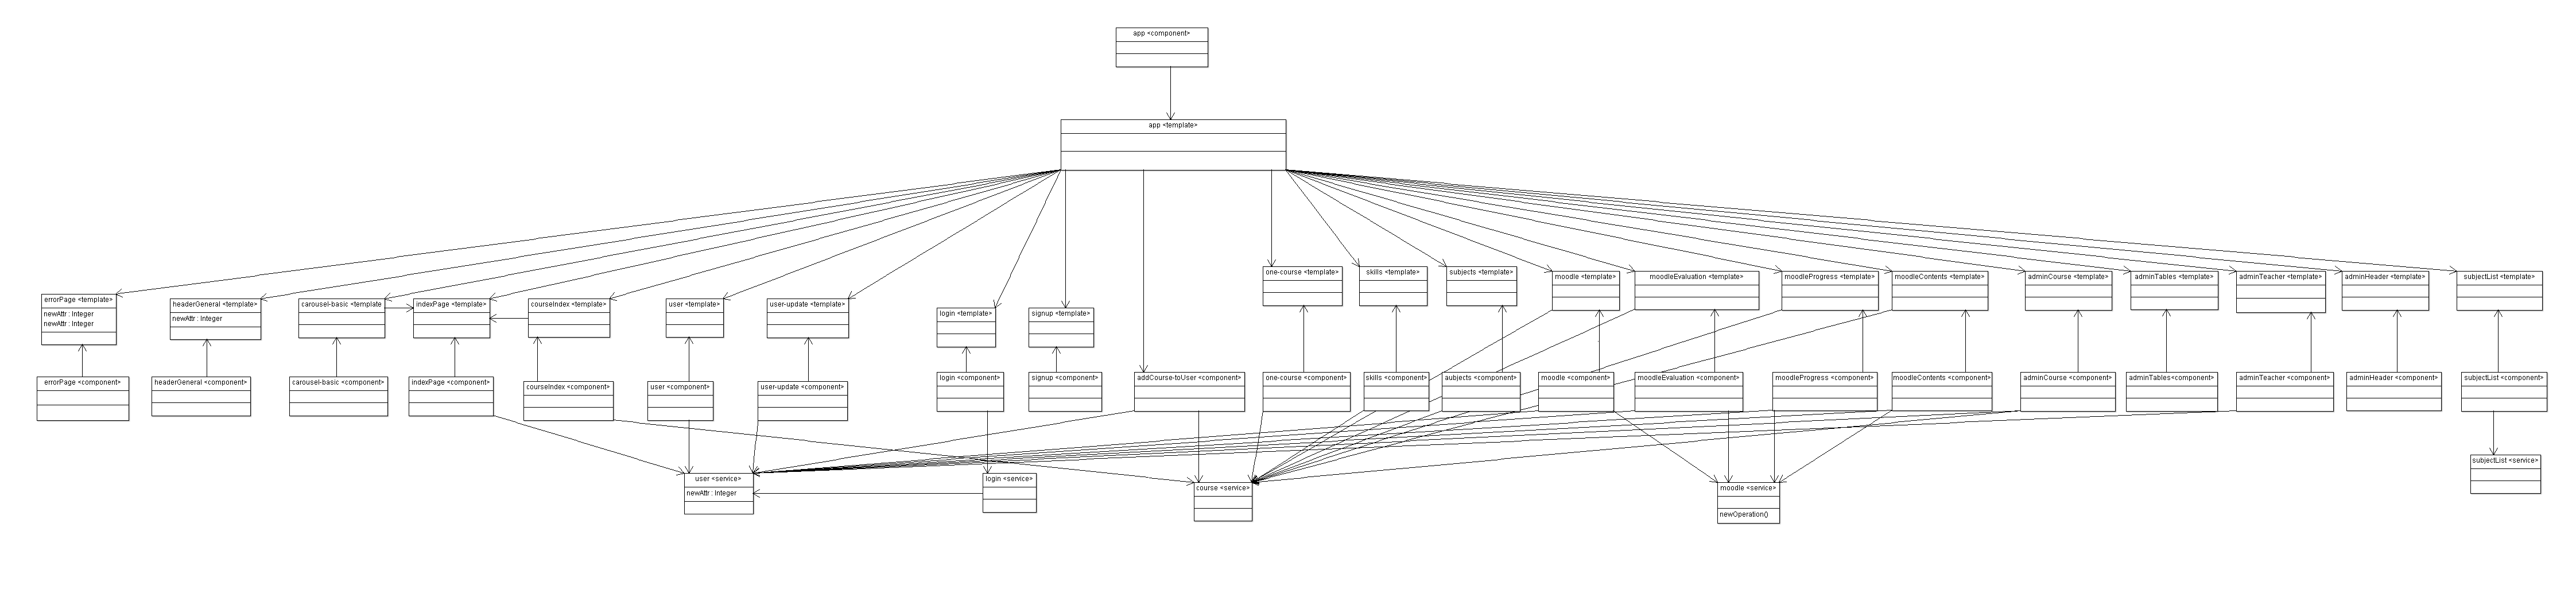 Component Diagram Phase V